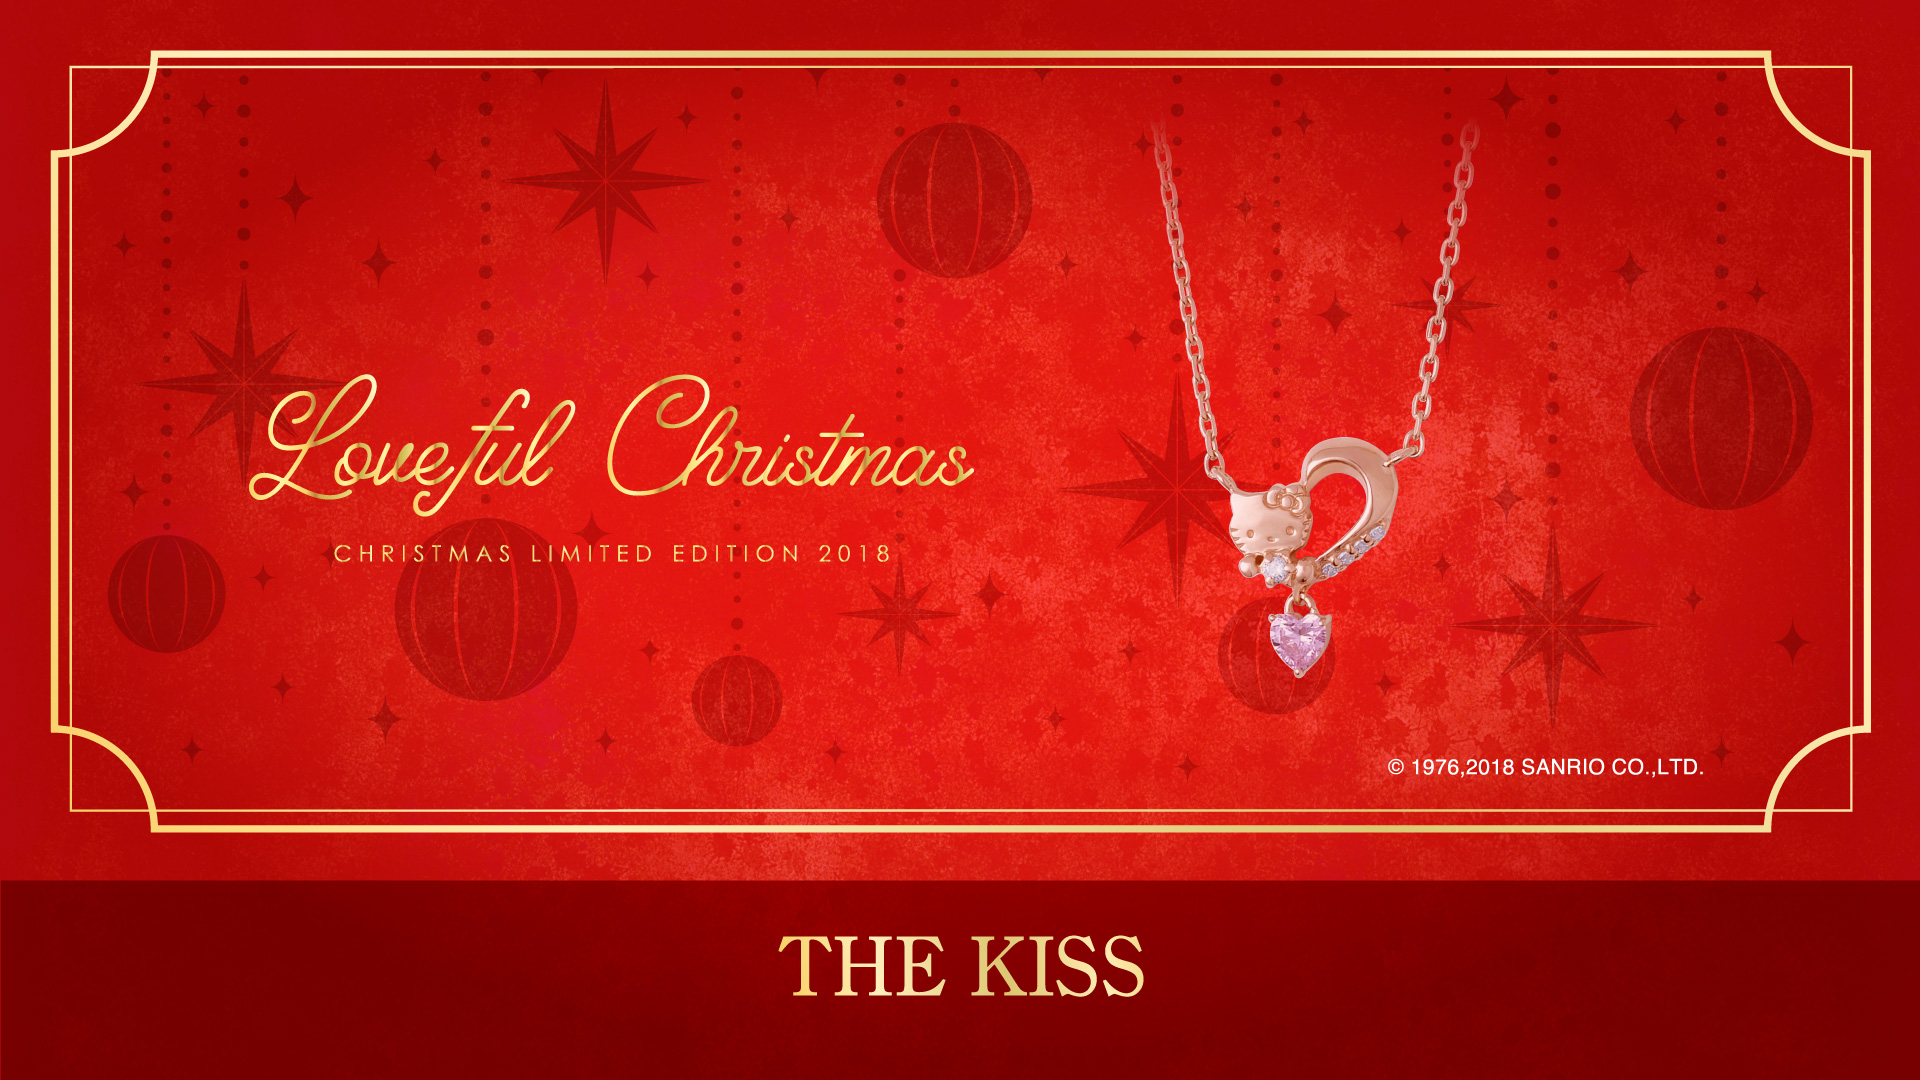 11 1 木 発売 18年 The Kiss ハローキティ クリスマス限定商品 株式会社ザ キッスのプレスリリース